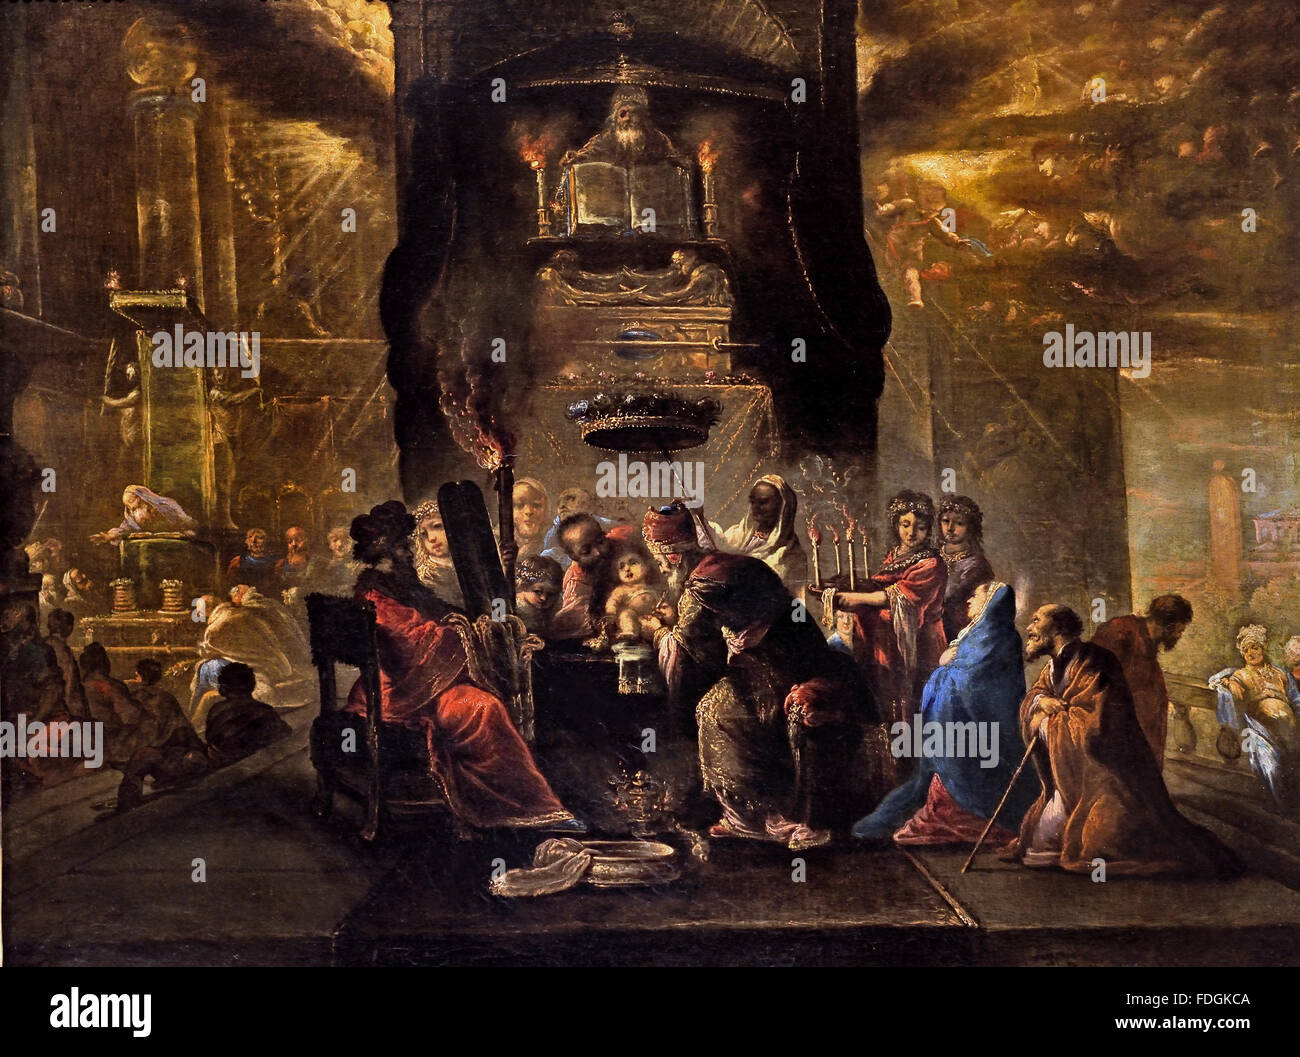 Claude Vignon (1593-1670 Tours): Beschneidung. Der Hohepriester, umgeben von einer großen Menschenmenge, führt die Beschneidung des Kindes durch. Frankreich Französische Beschneidung die Szene zeigt den Moment, in dem Maria und Joseph das Jesuskind dem jüdischen Ritus der Beschneidung unterwerfen Stockfoto